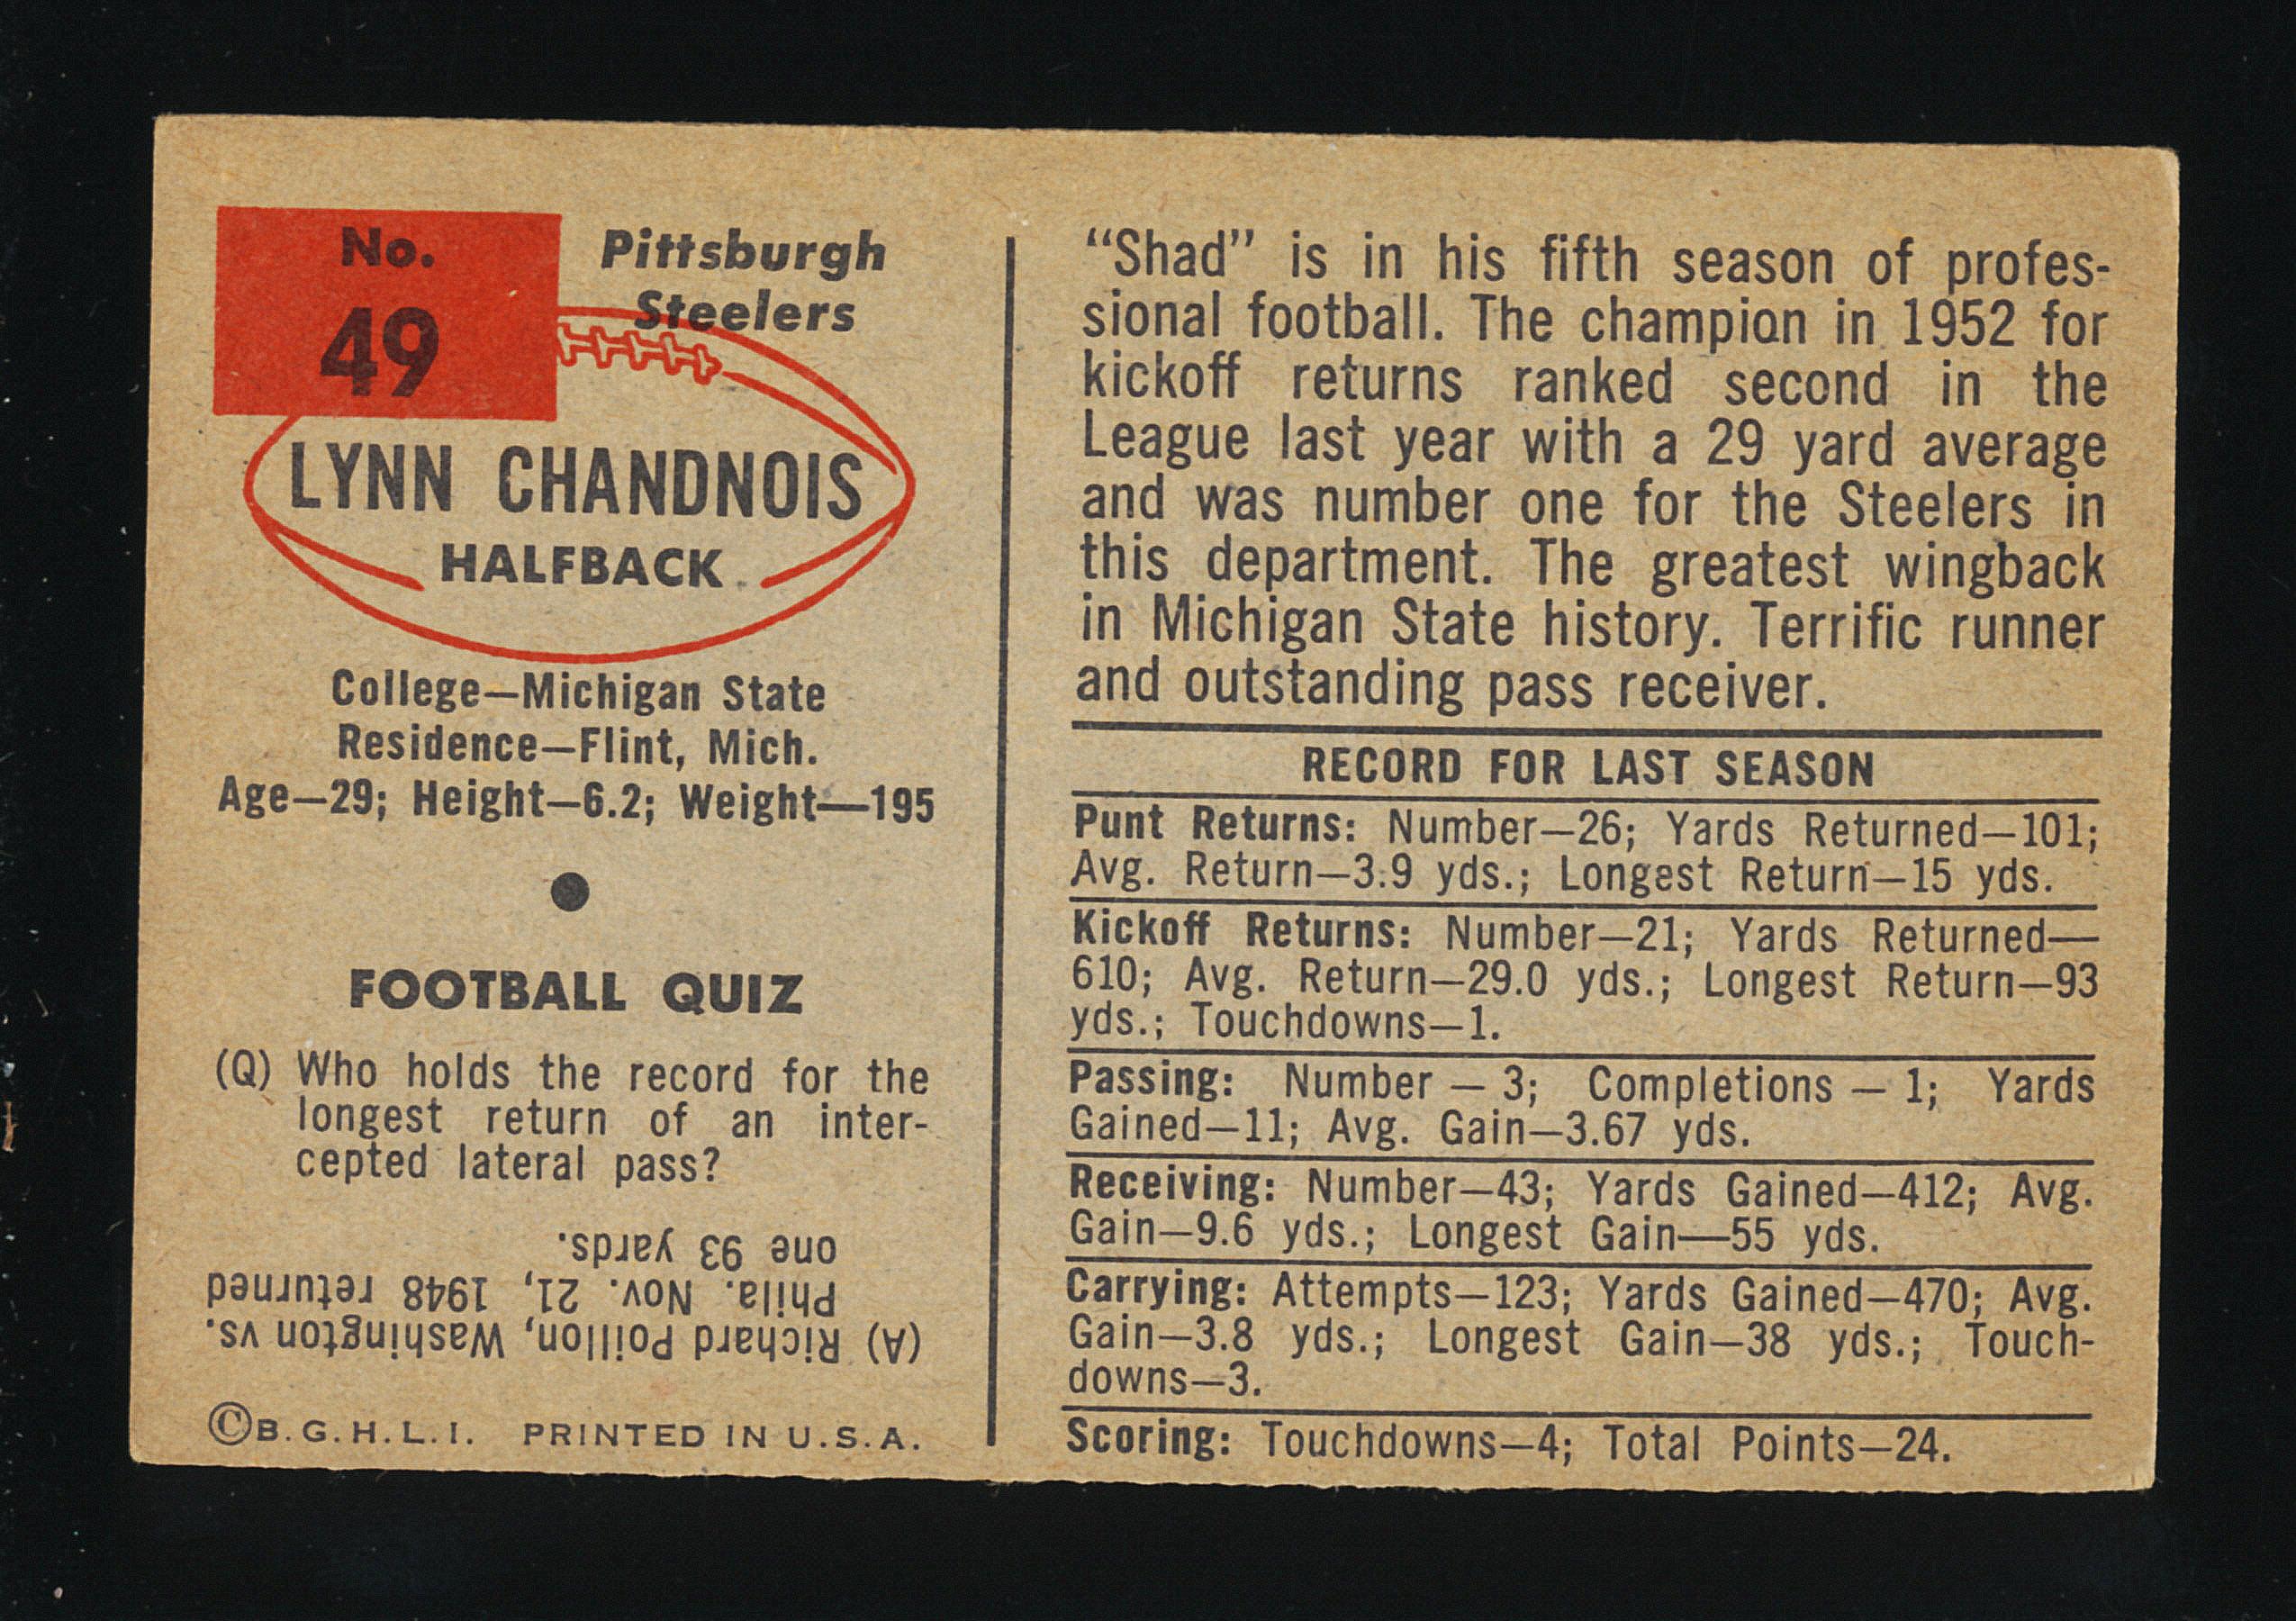 1954 Bowman Football Card #49 Lynn Chandnois Pittsburgh Steelers